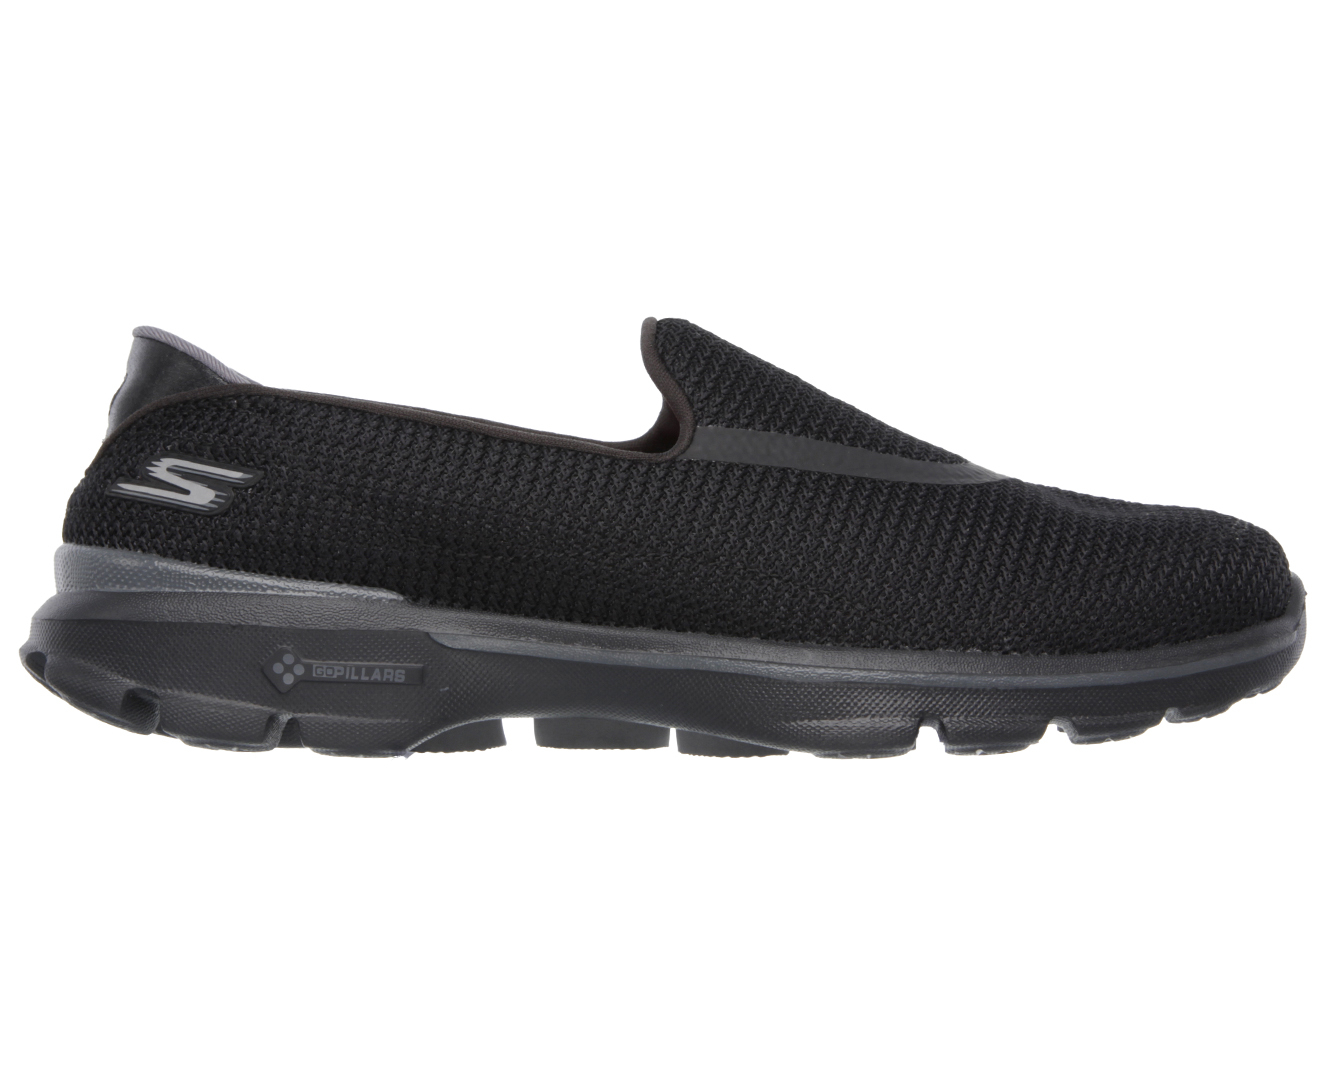 Skechers Women's Go Walk 3 Slip-On Shoe - Black/Black | Catch.co.nz